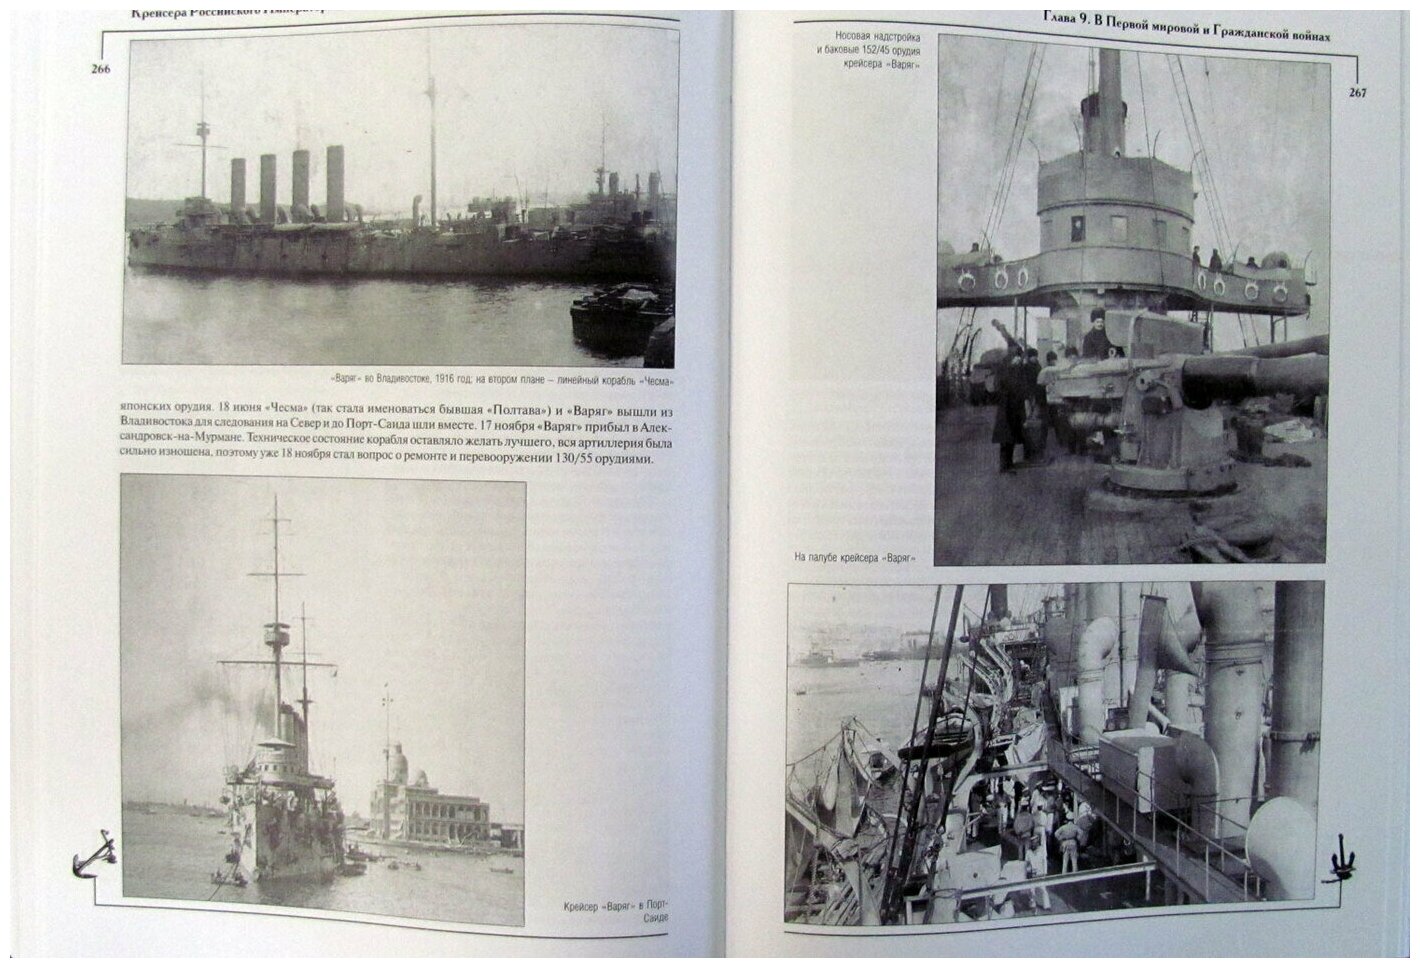 Крейсера Российского императорского флота 1856-1917 годы Часть 2 - фото №3